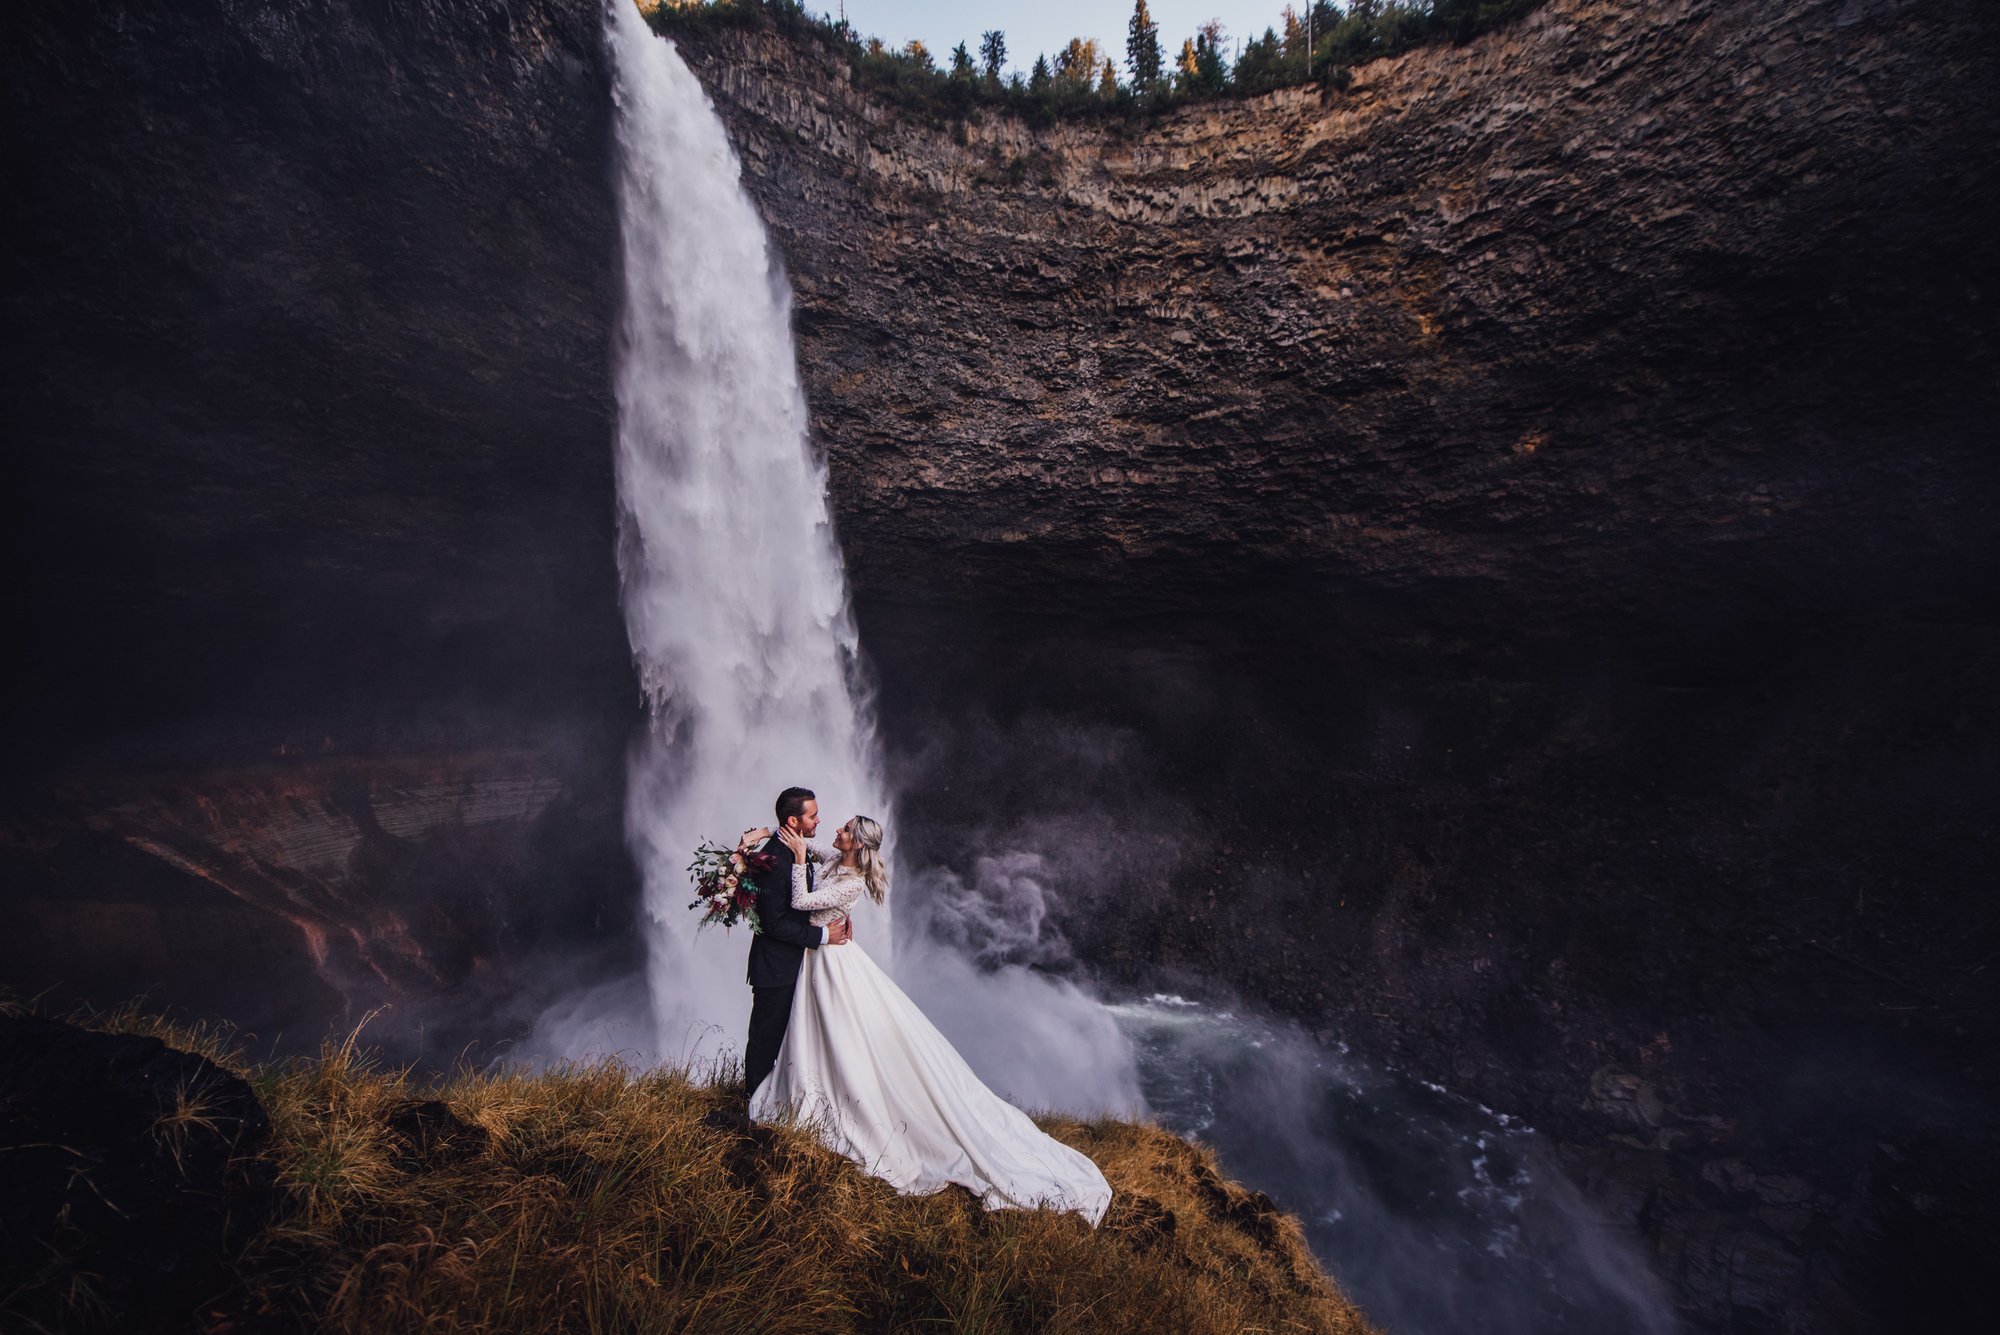 Wedding Photoshoot in Helmcken Falls, Wells Gray